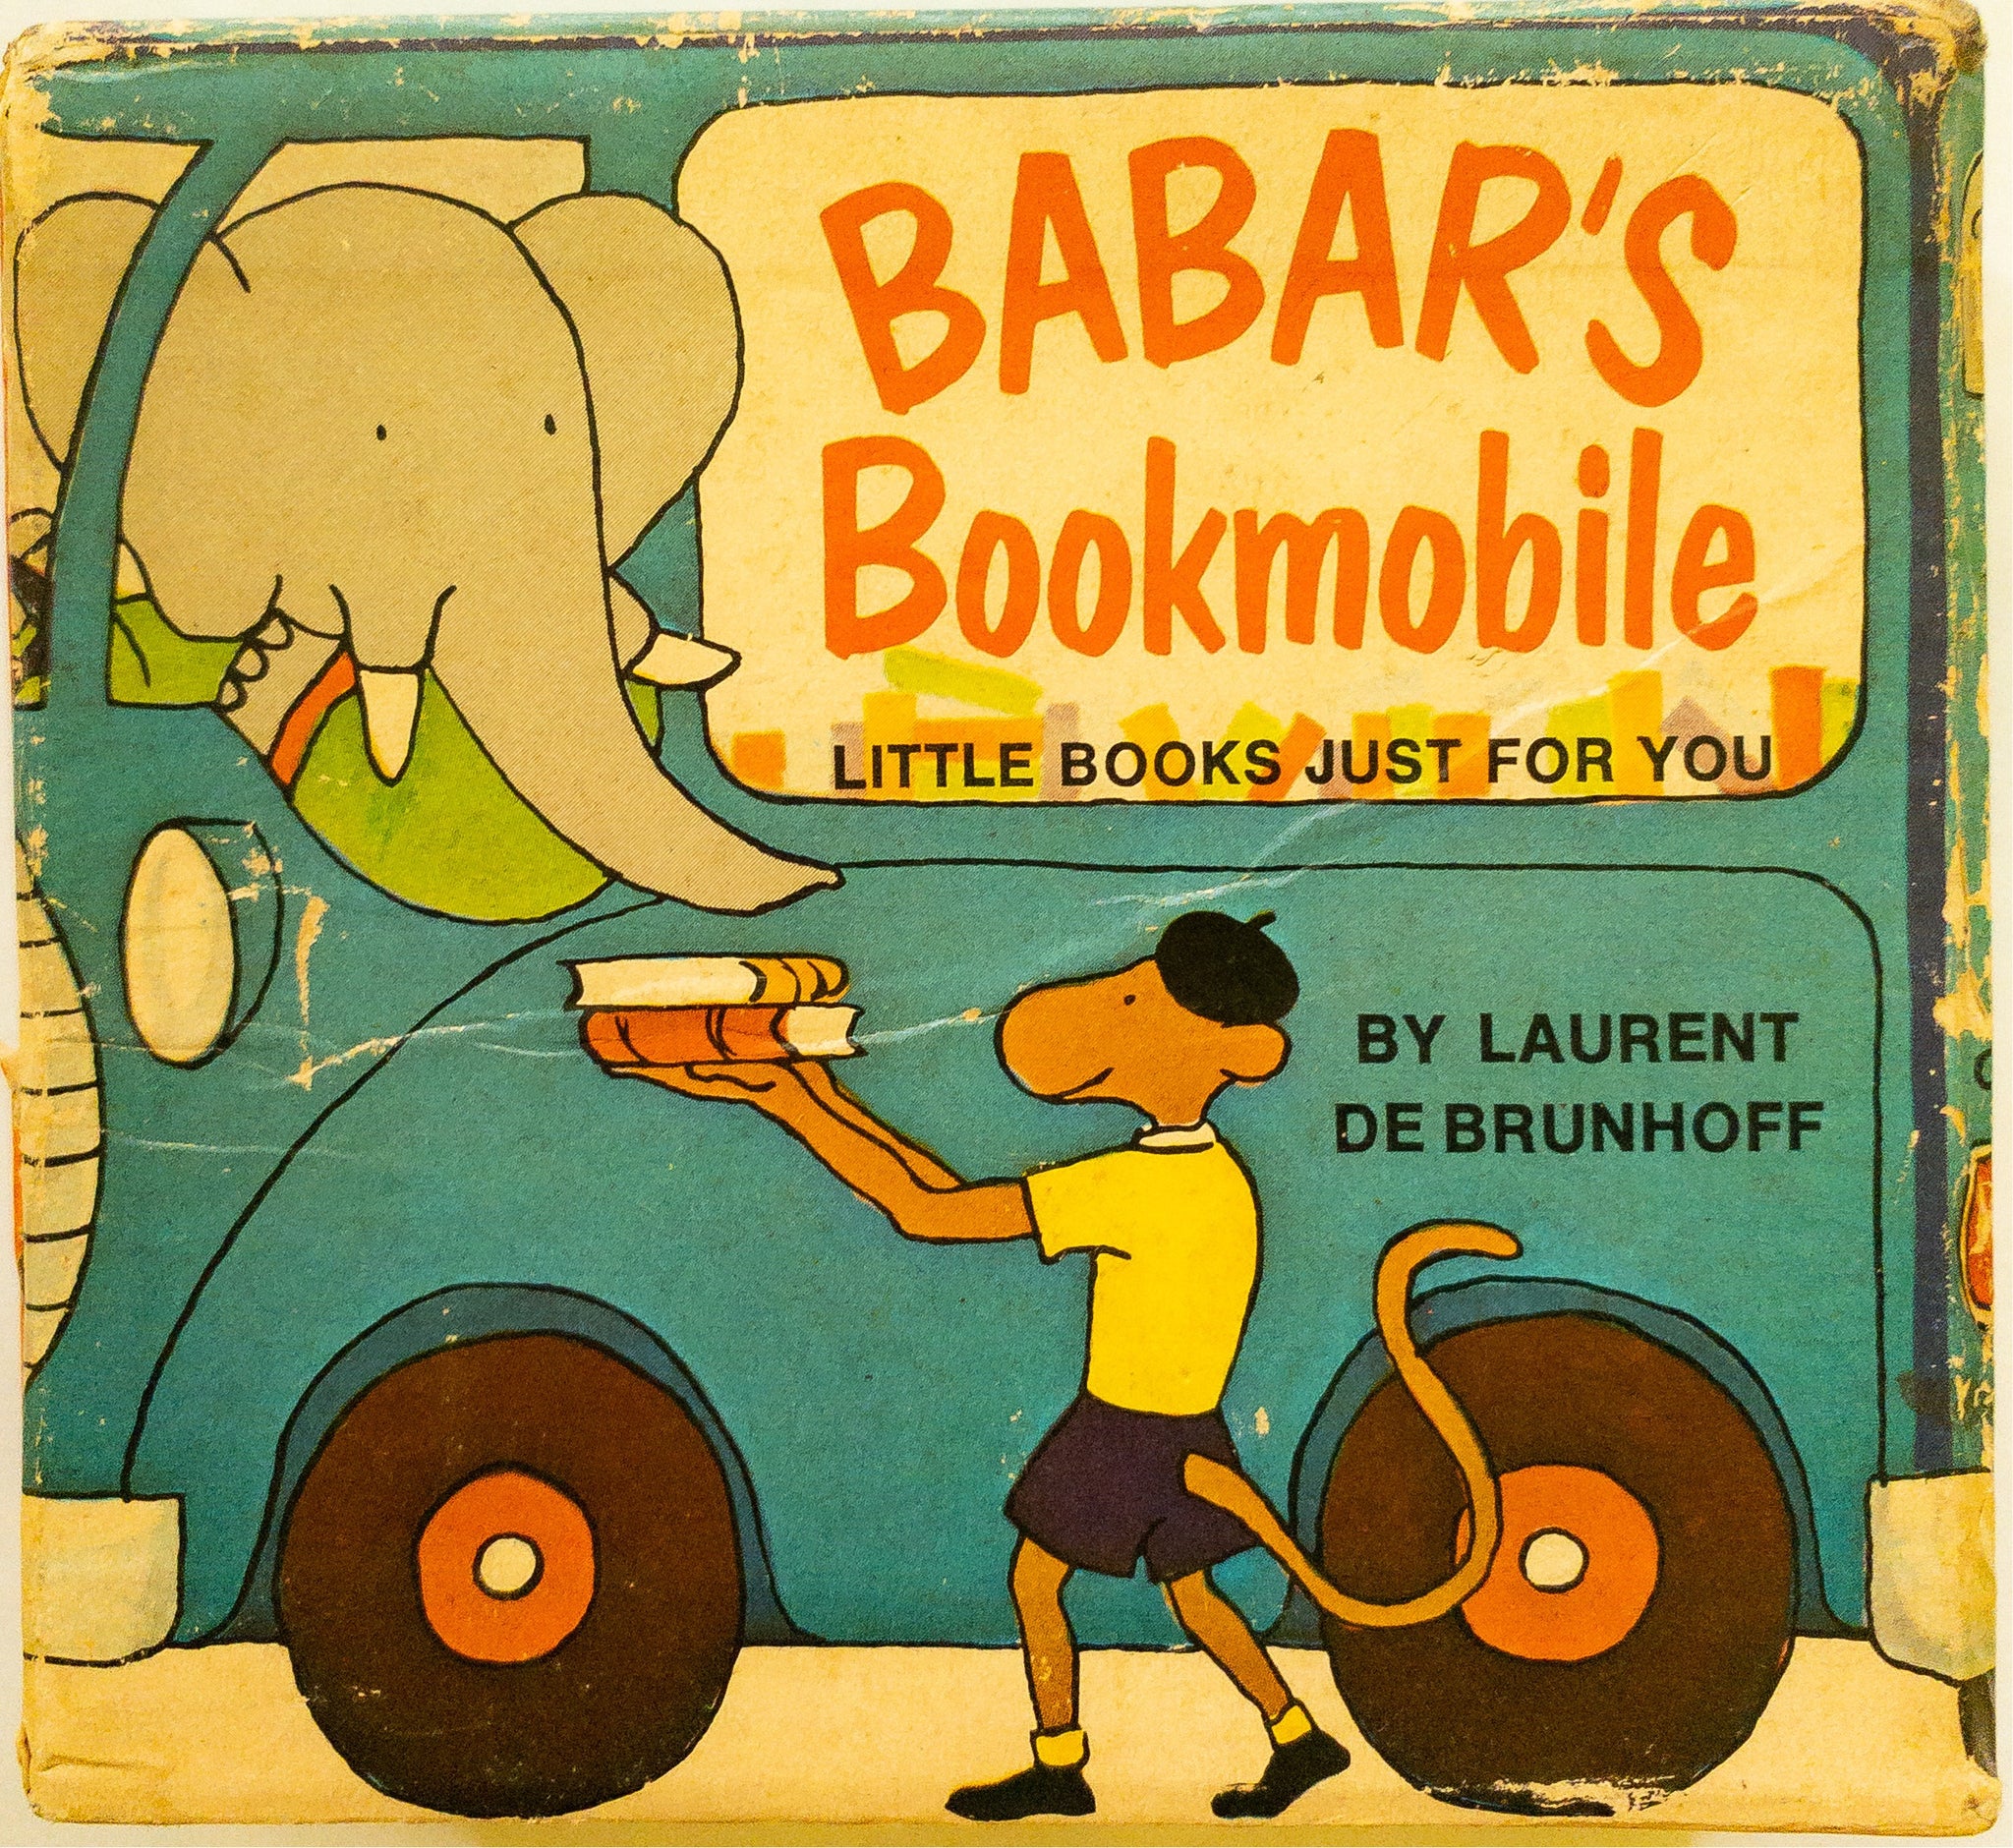 Babar’s Bookmobile, Laurent de Brunhoff